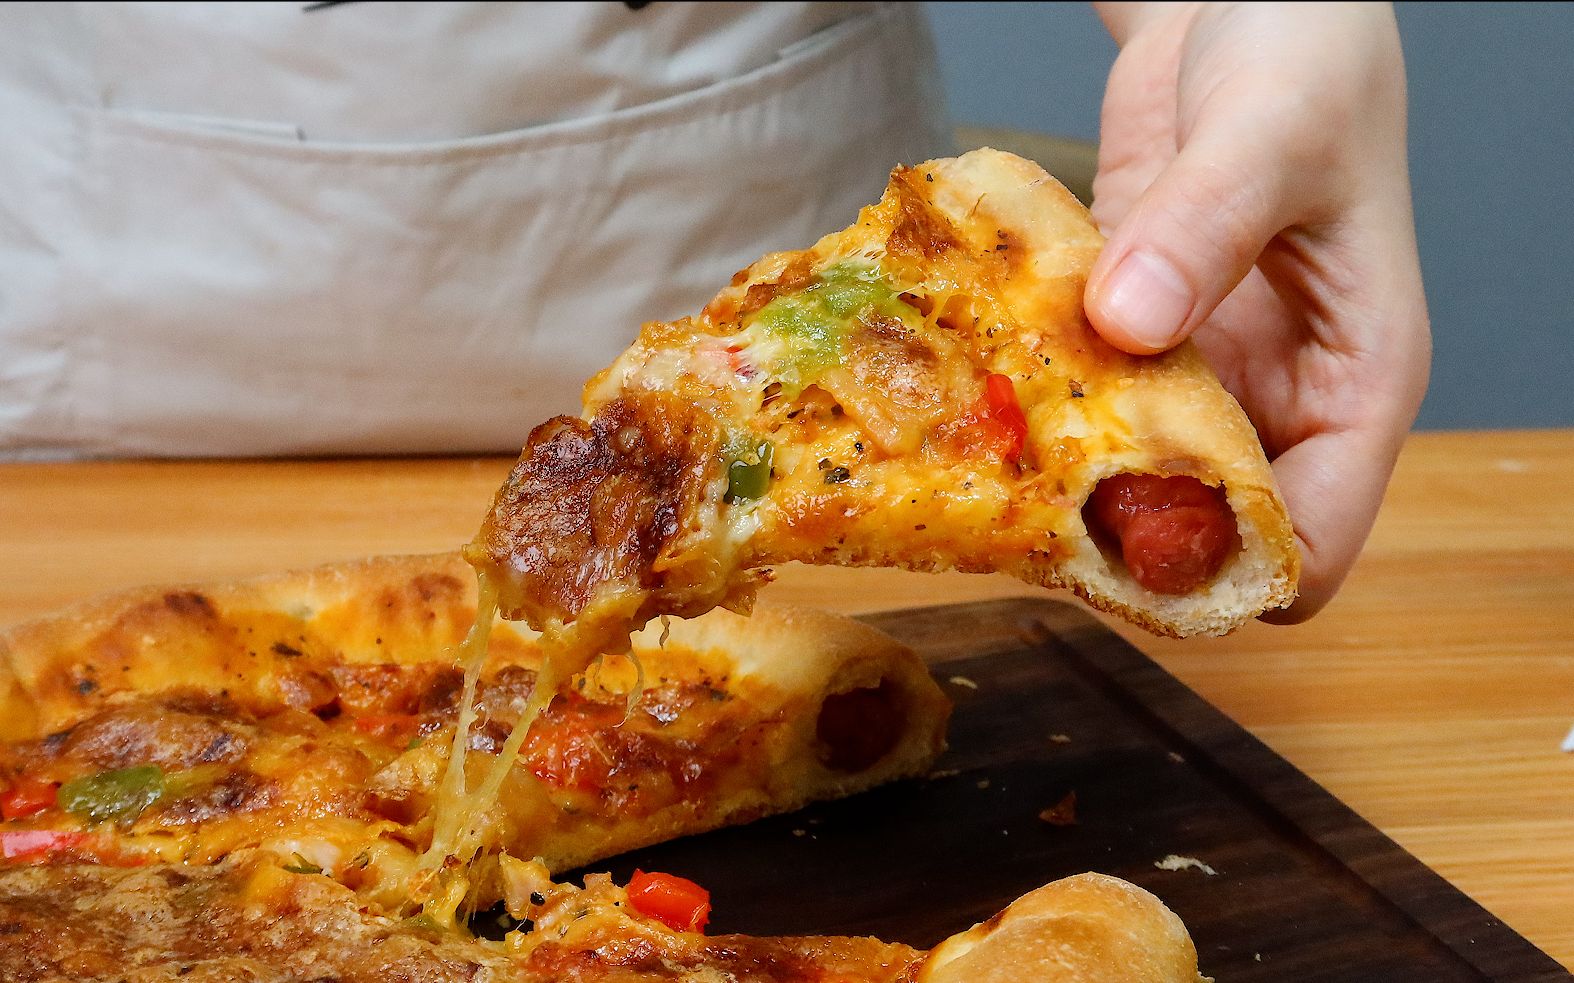 意式萨拉米芝心披萨怎么做_意式萨拉米芝心披萨的做法_yiyi妈妈_豆果美食